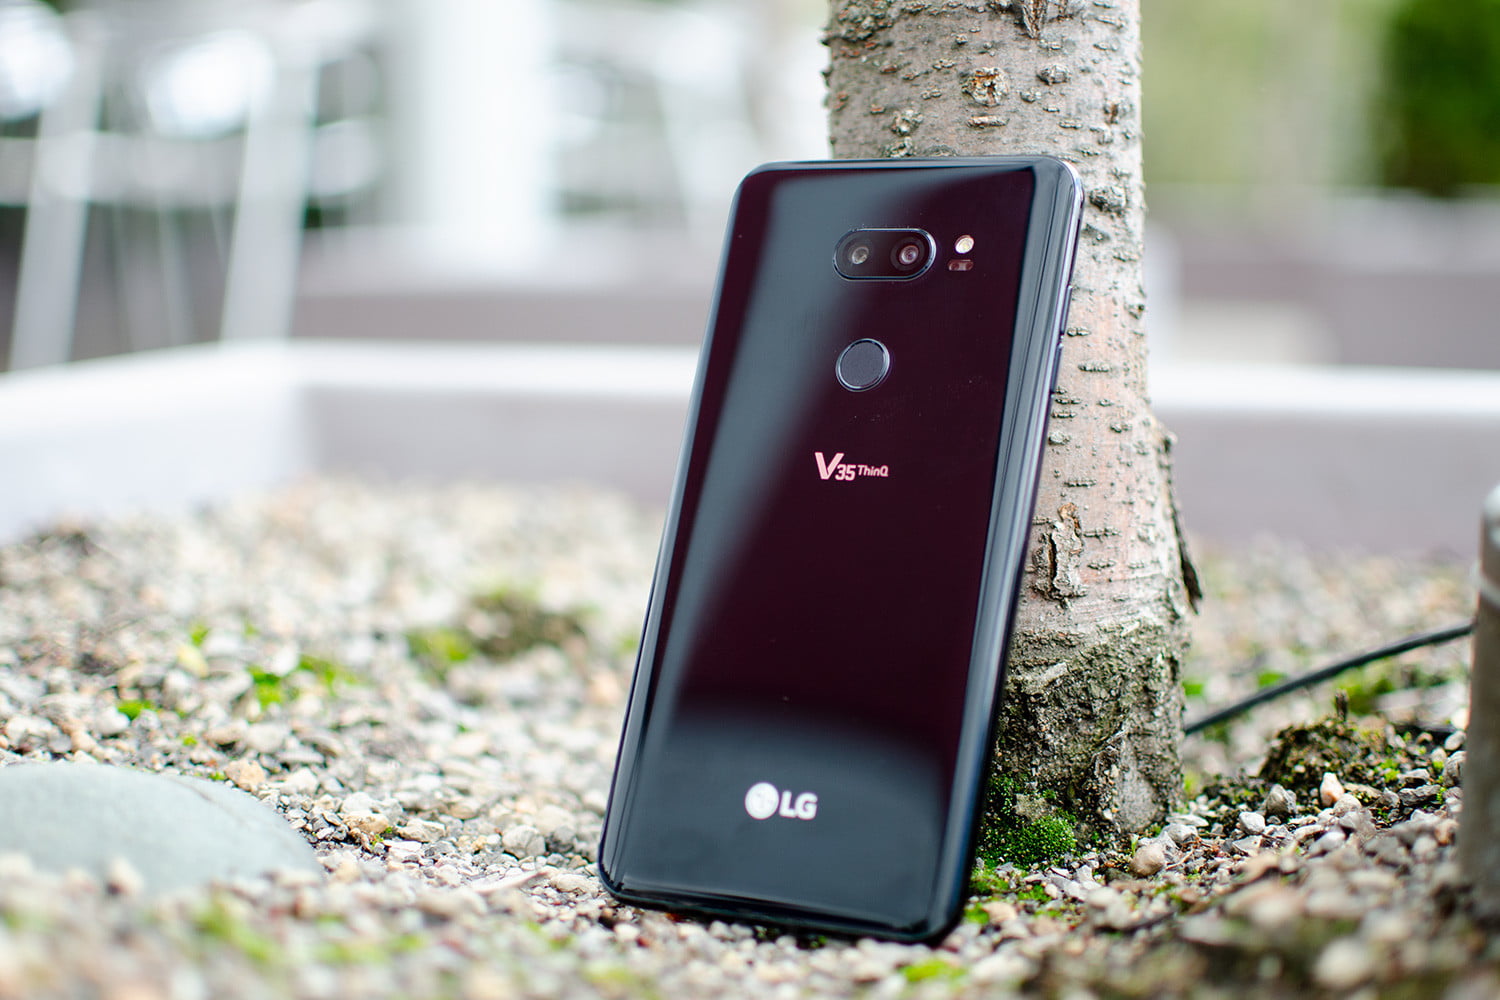 LG تسجل علامات تجارية جديدة تحت إسمها، ومن بينها LG V60 و LG V70